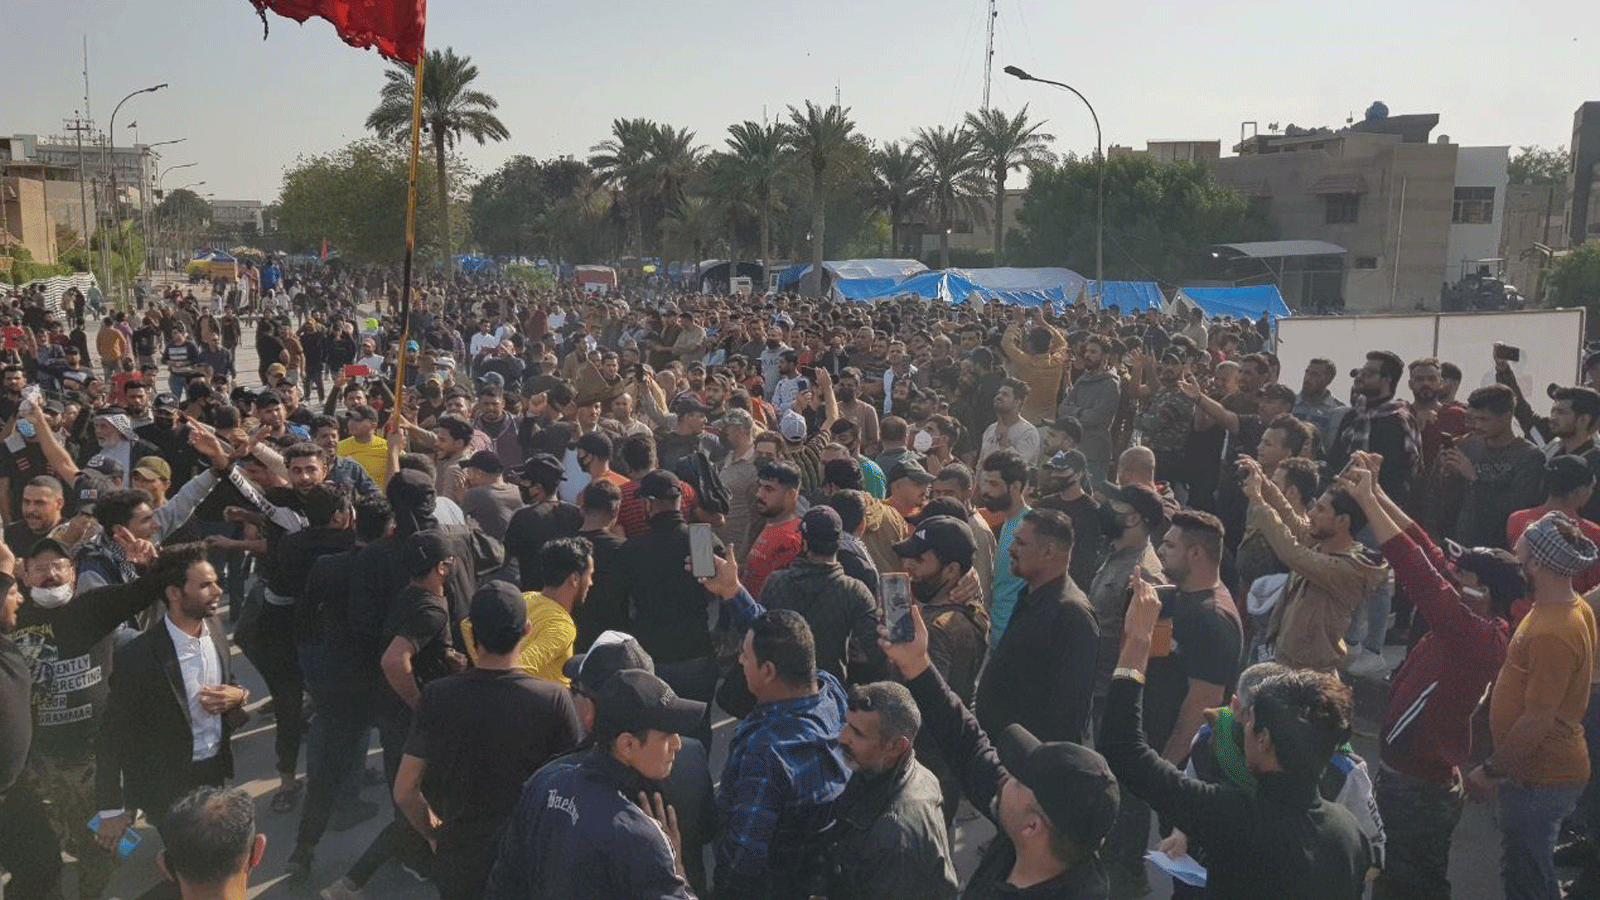 المحتجون على نتائج الانتخابات امام بوابات المنطقة الخضراء وسط بغداد. 19 تشرين الثاني/ نوفمبر 2021 (تويتر)